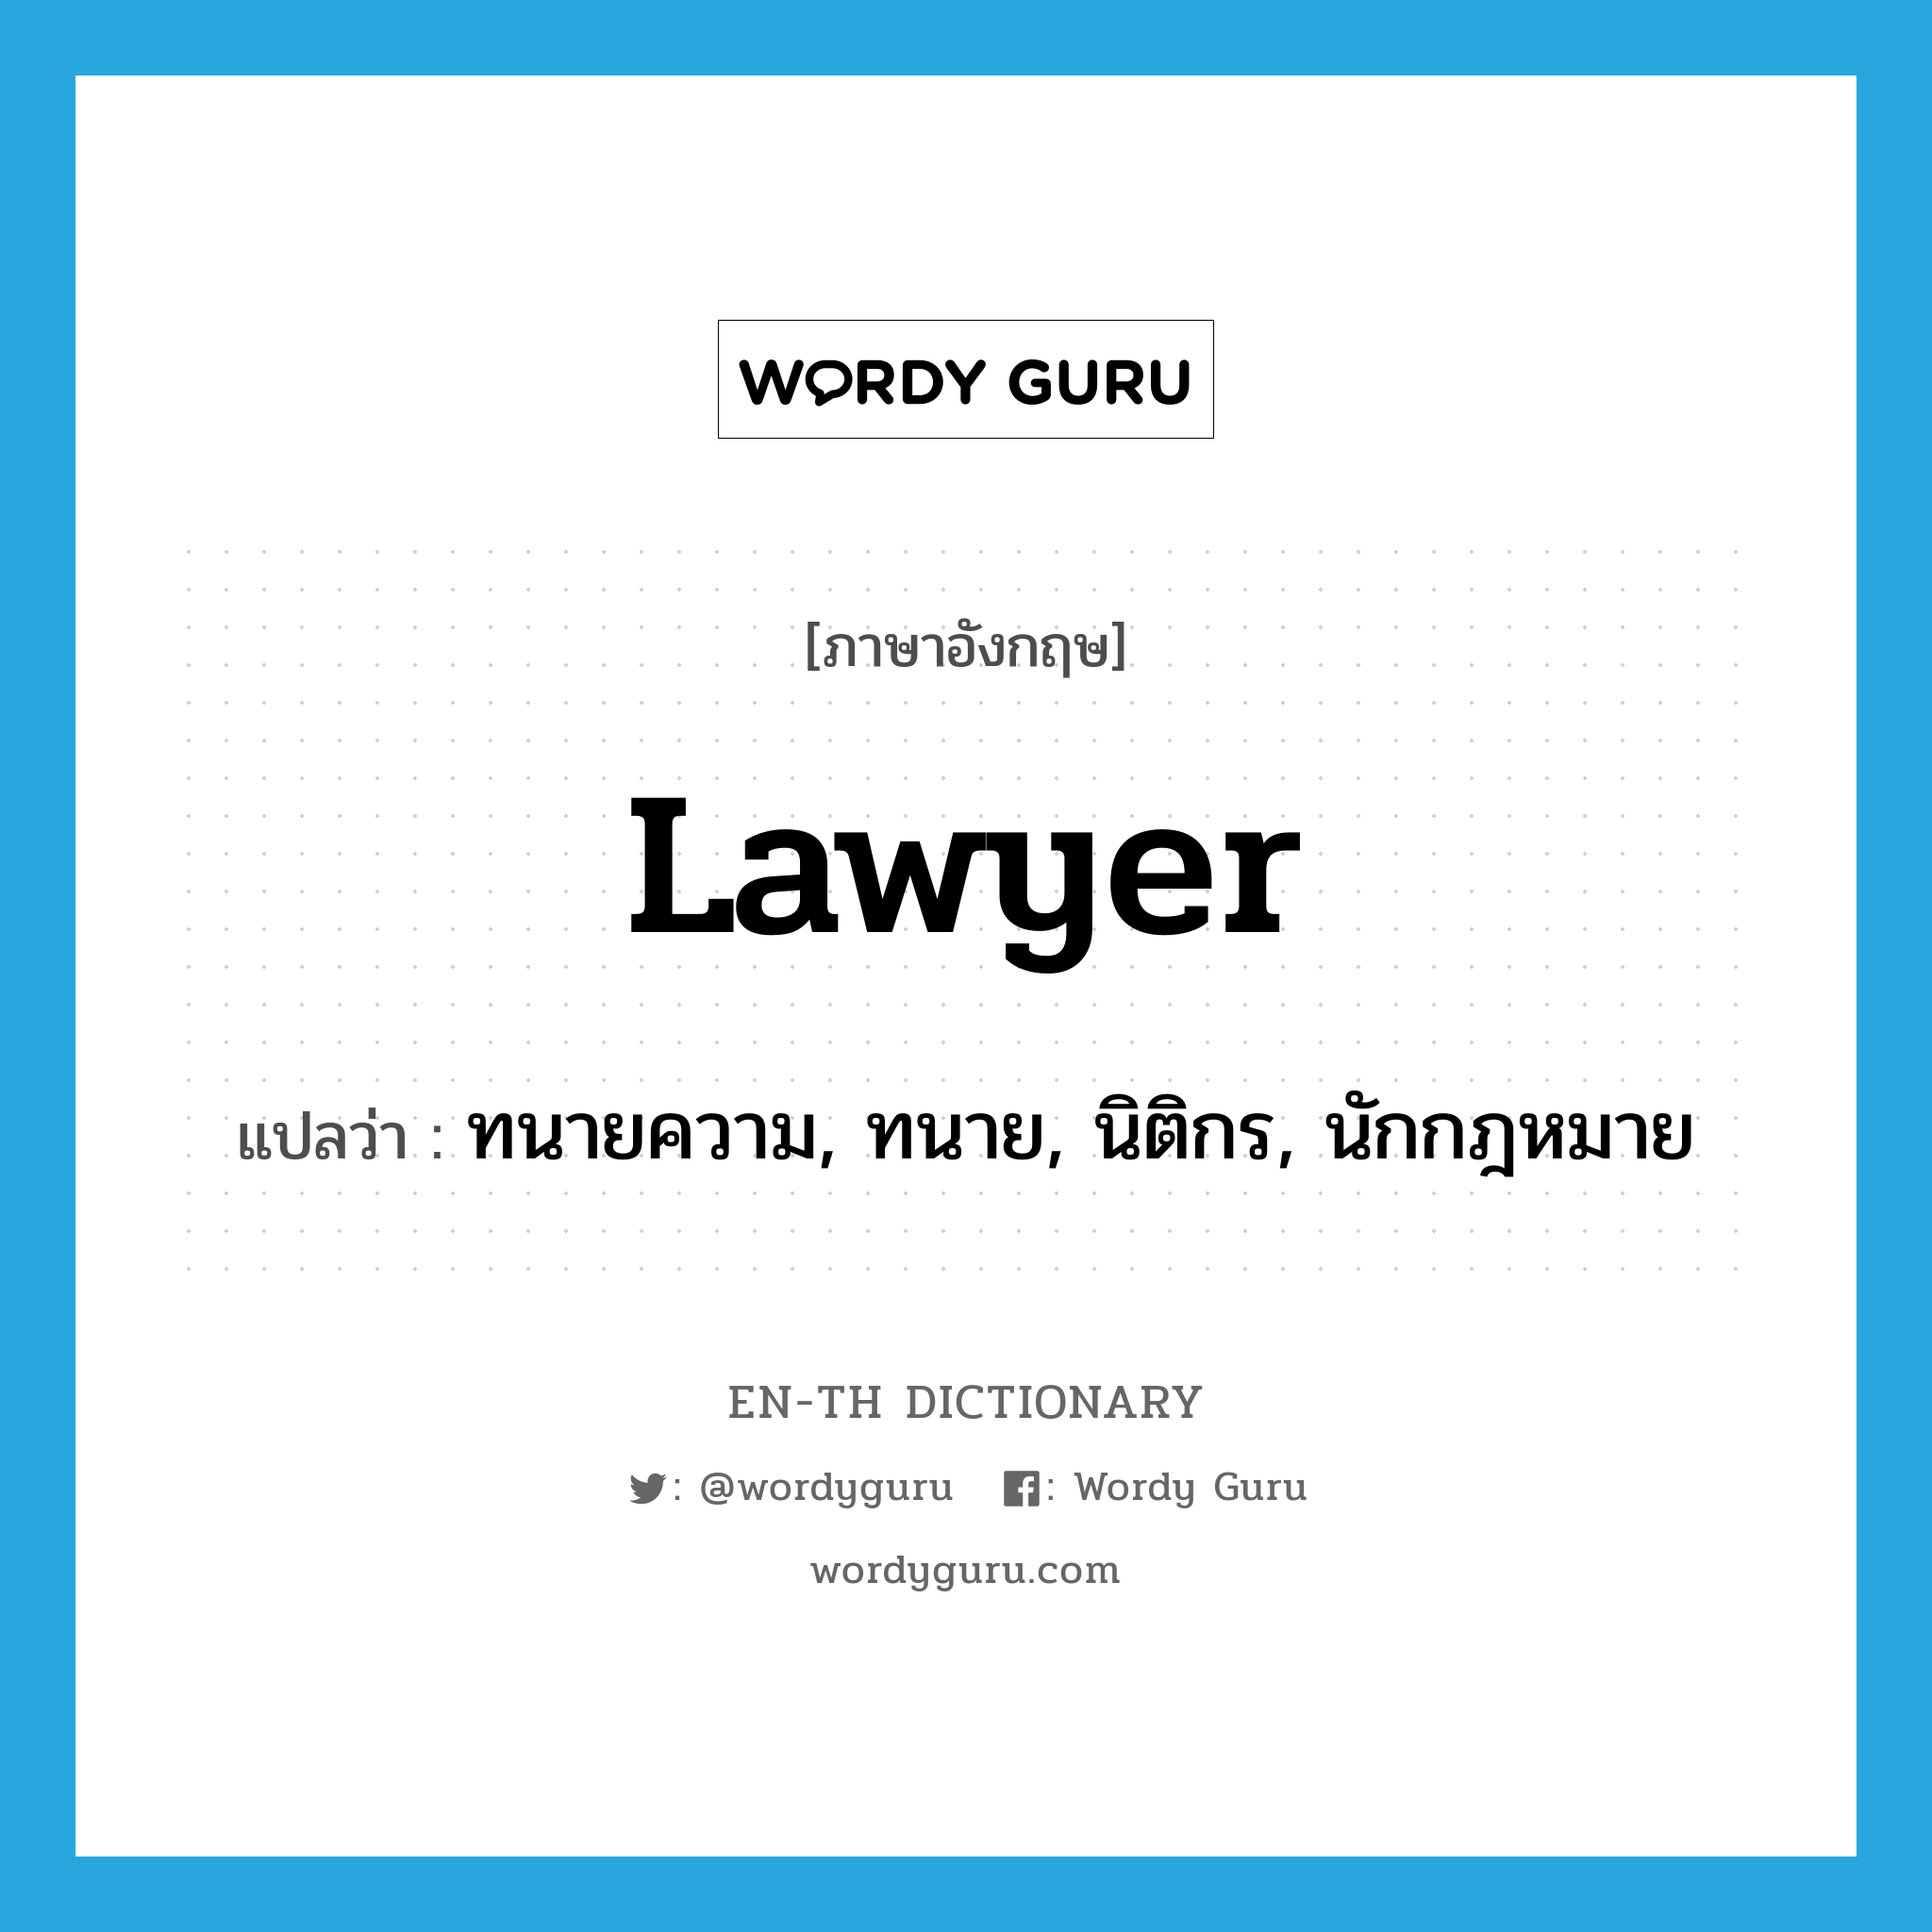 ทนายความ, ทนาย, นิติกร, นักกฎหมาย ภาษาอังกฤษ?, คำศัพท์ภาษาอังกฤษ ทนายความ, ทนาย, นิติกร, นักกฎหมาย แปลว่า lawyer ประเภท N หมวด N